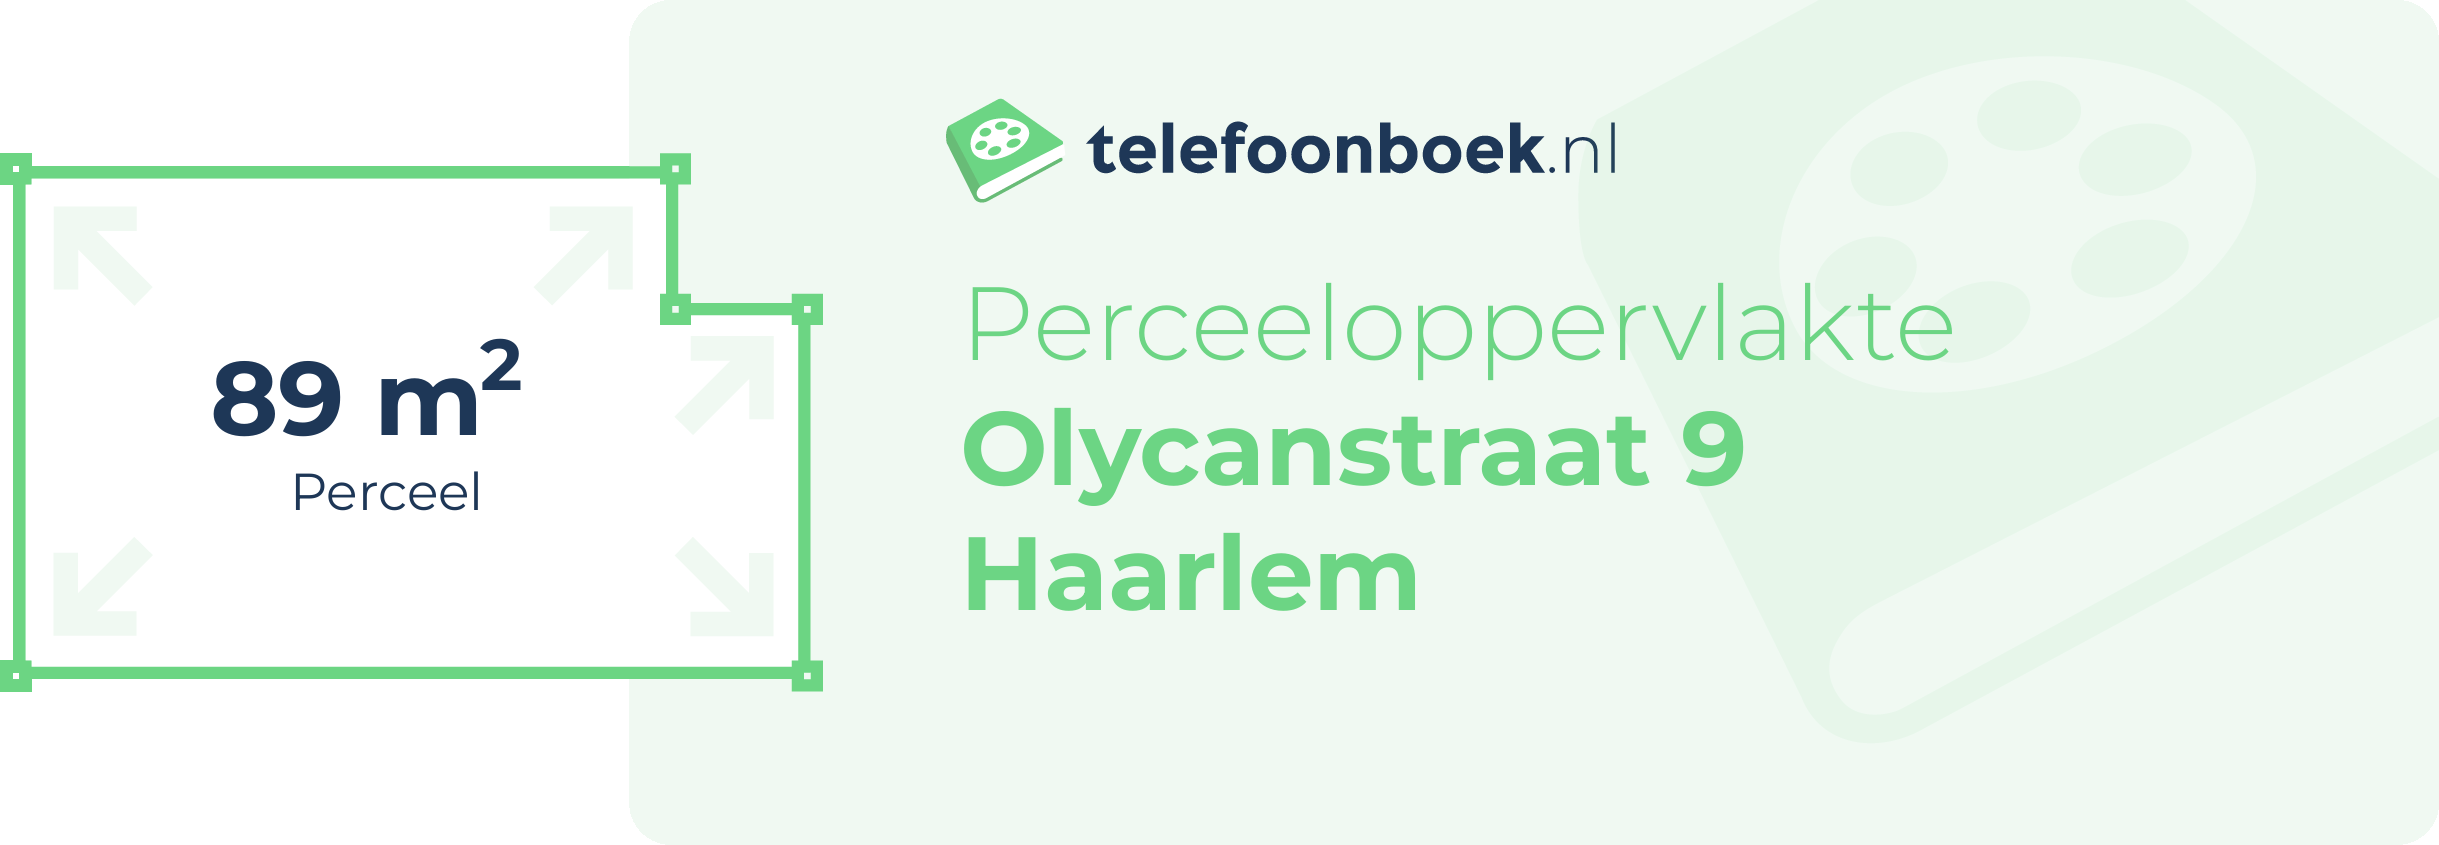 Perceeloppervlakte Olycanstraat 9 Haarlem